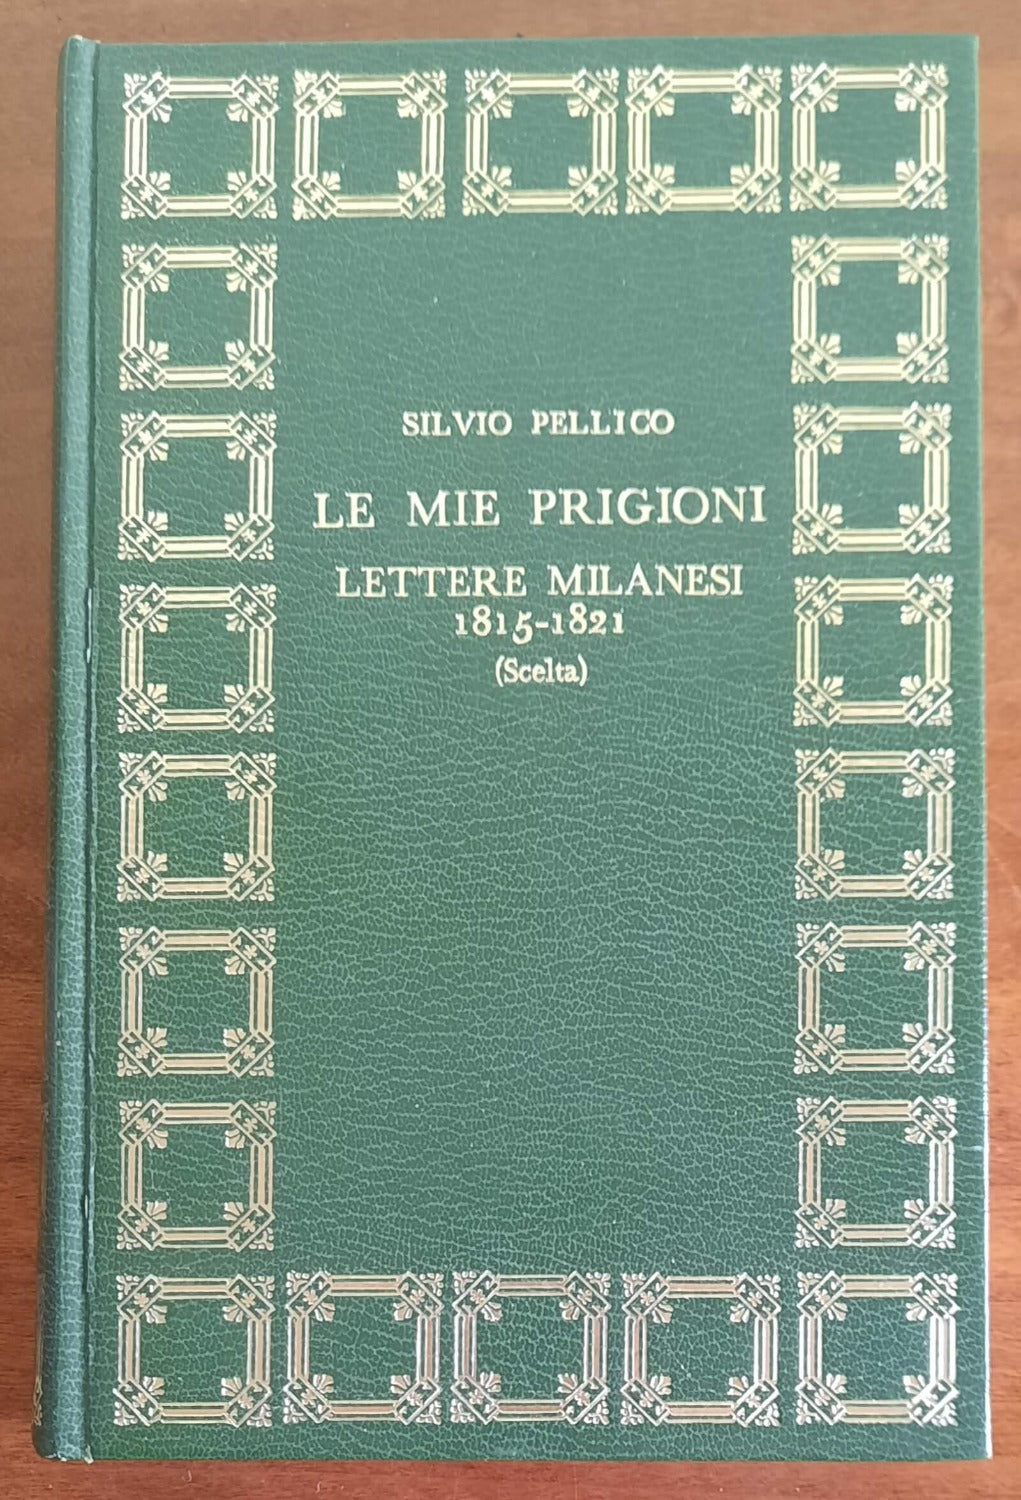 Le mie prigioni e Lettere milanesi 1815 - 1821 - Silvio Pellico